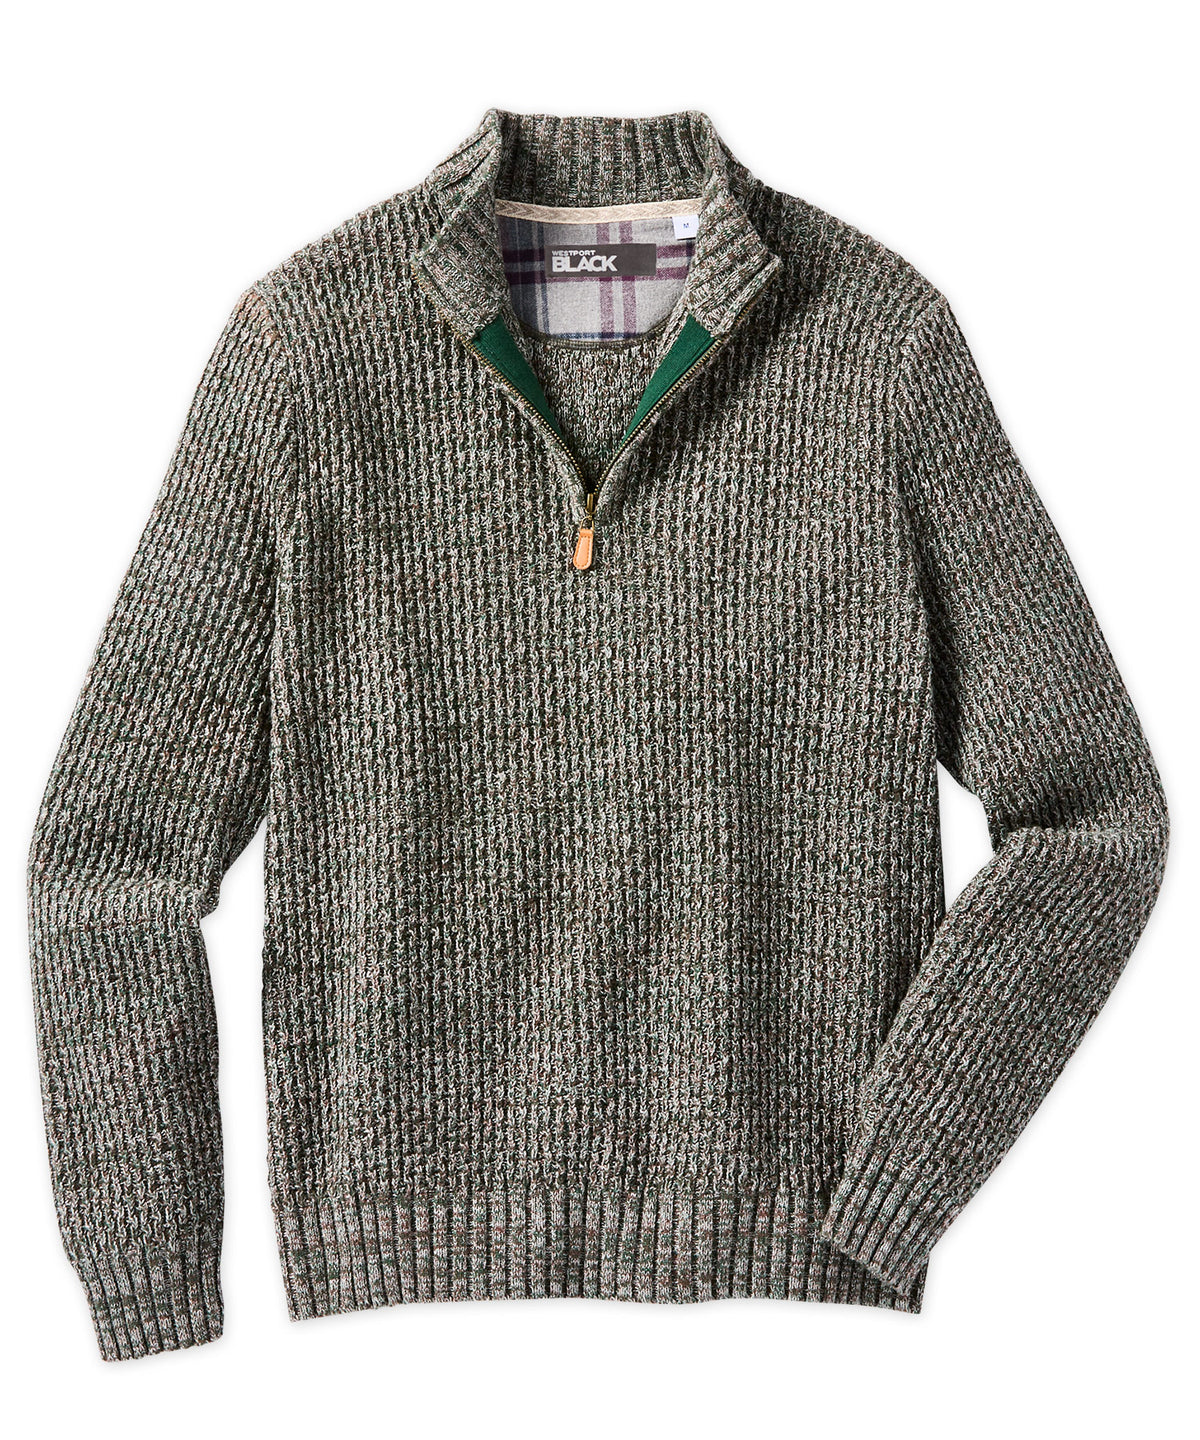 Men's Cotton Half-Zip Sweater